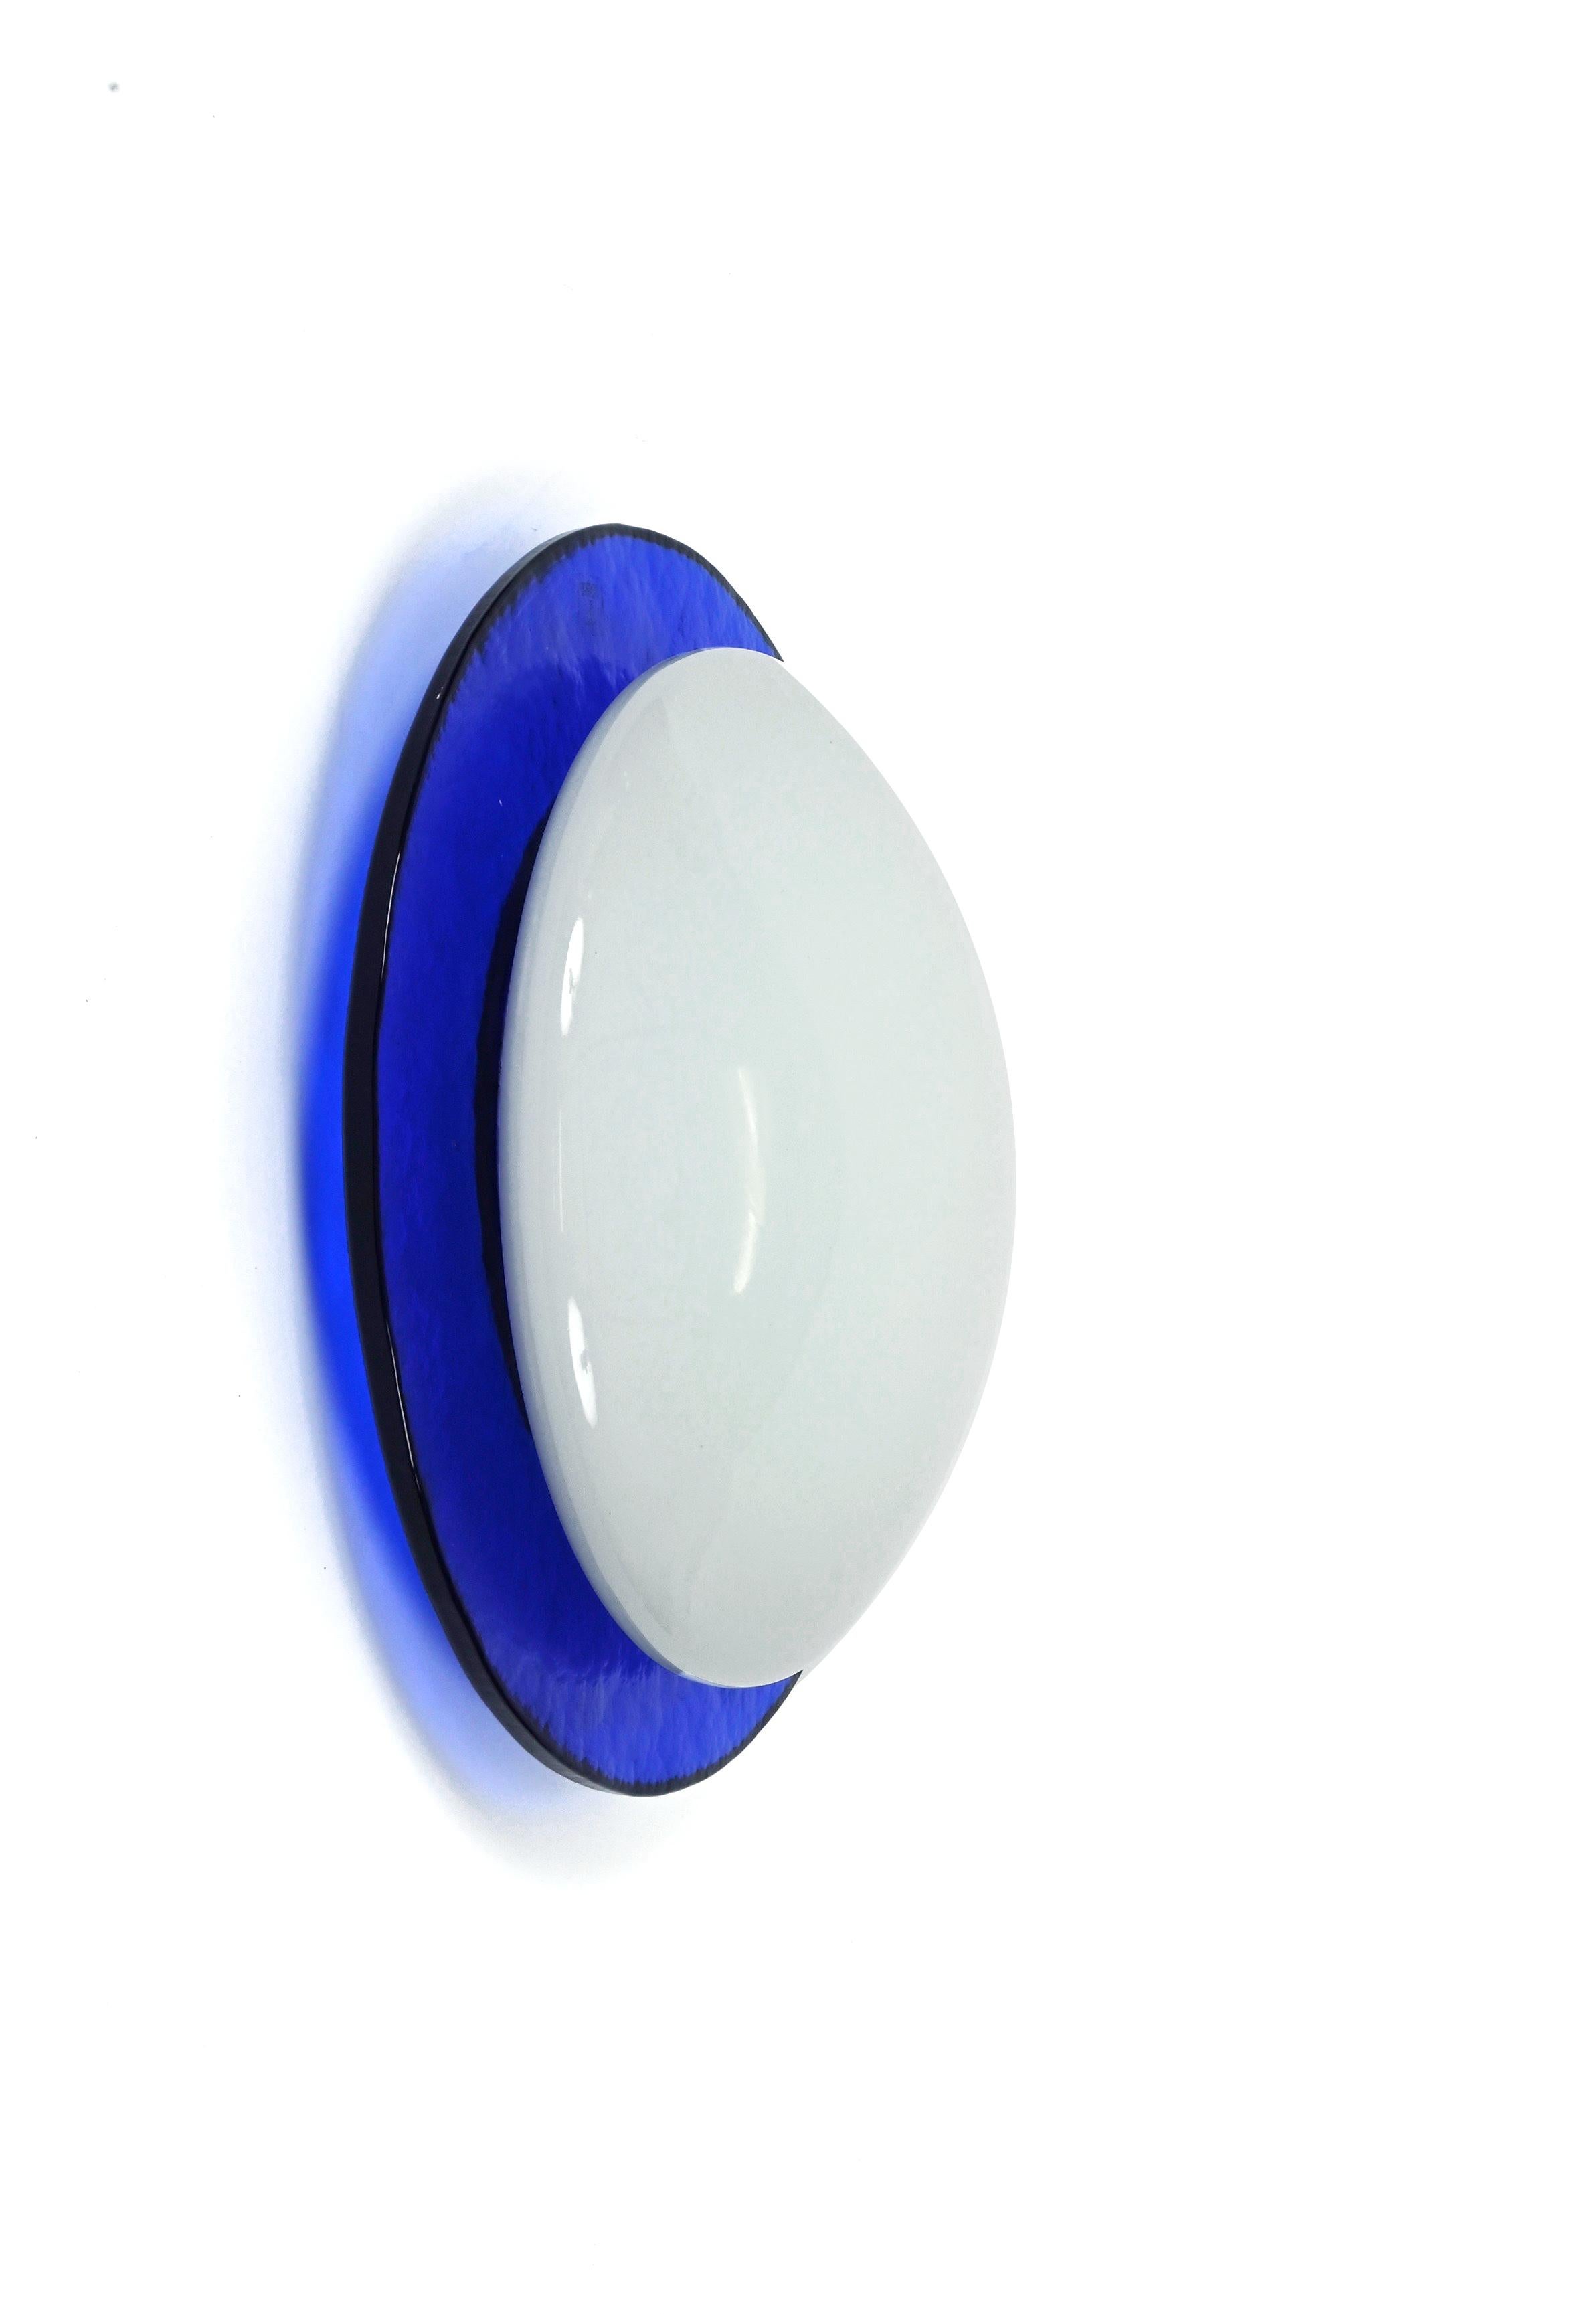 Fantastique applique ronde soufflée à la bouche pour mur ou plafond en verre de Murano bleu et blanc gaufré. Ce magnifique luminaire a été conçu en Italie dans les années 1980.

Cette pièce est magnifique en raison de la superposition d'un verre